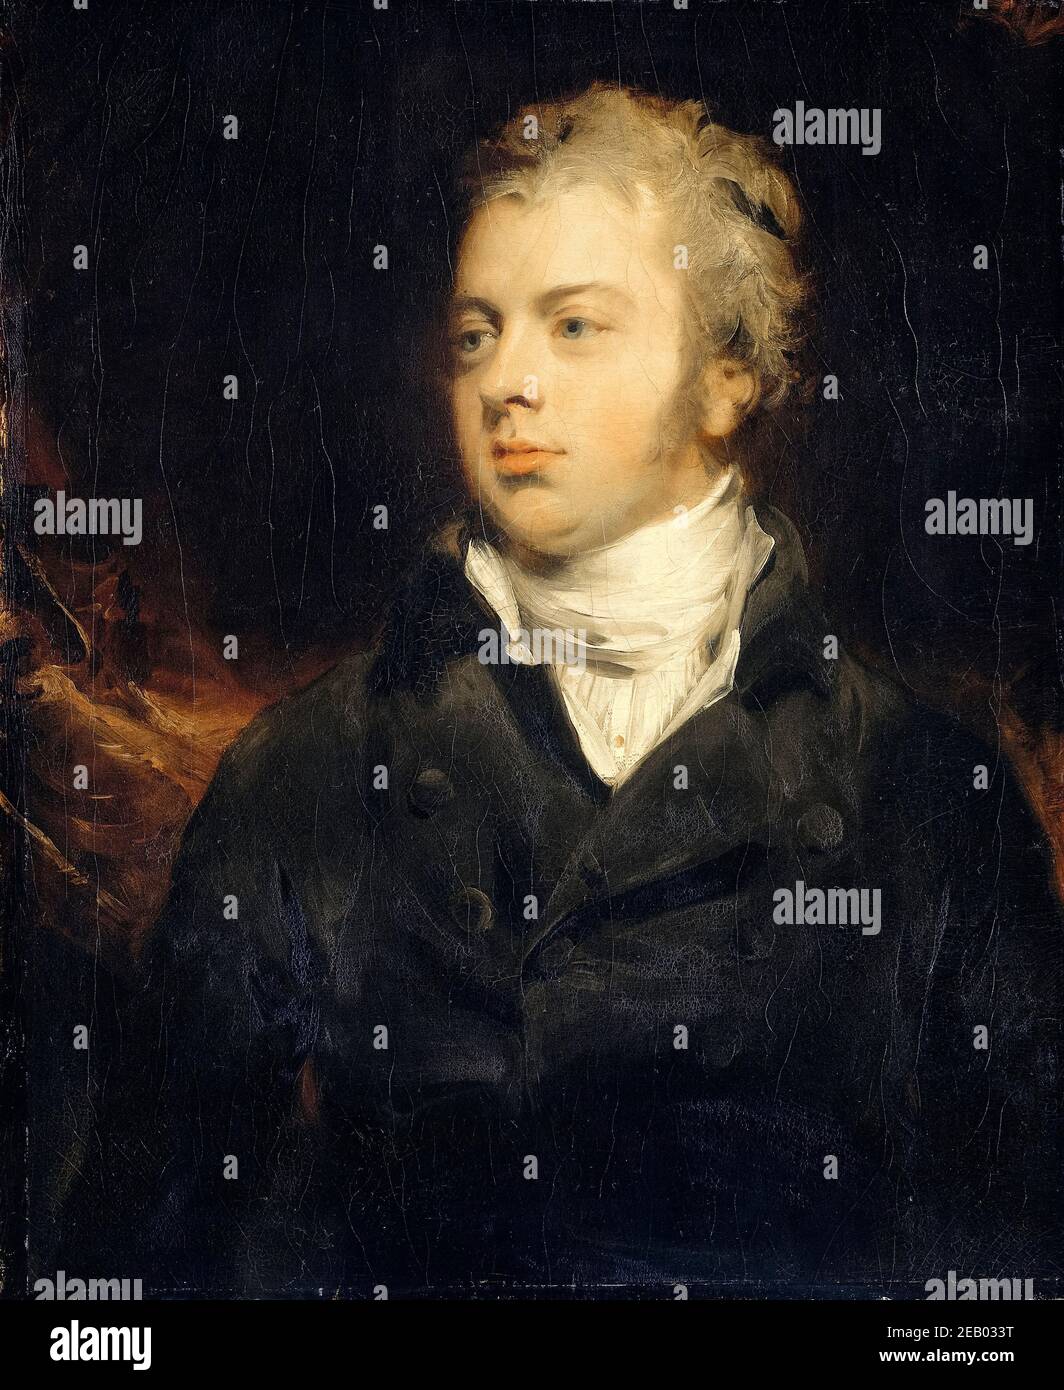 Sir Thomas Lawrence, Willem Ferdinand Mogge Muilman, Président de la Banque des pays-Bas, portrait painting, 1800 Banque D'Images